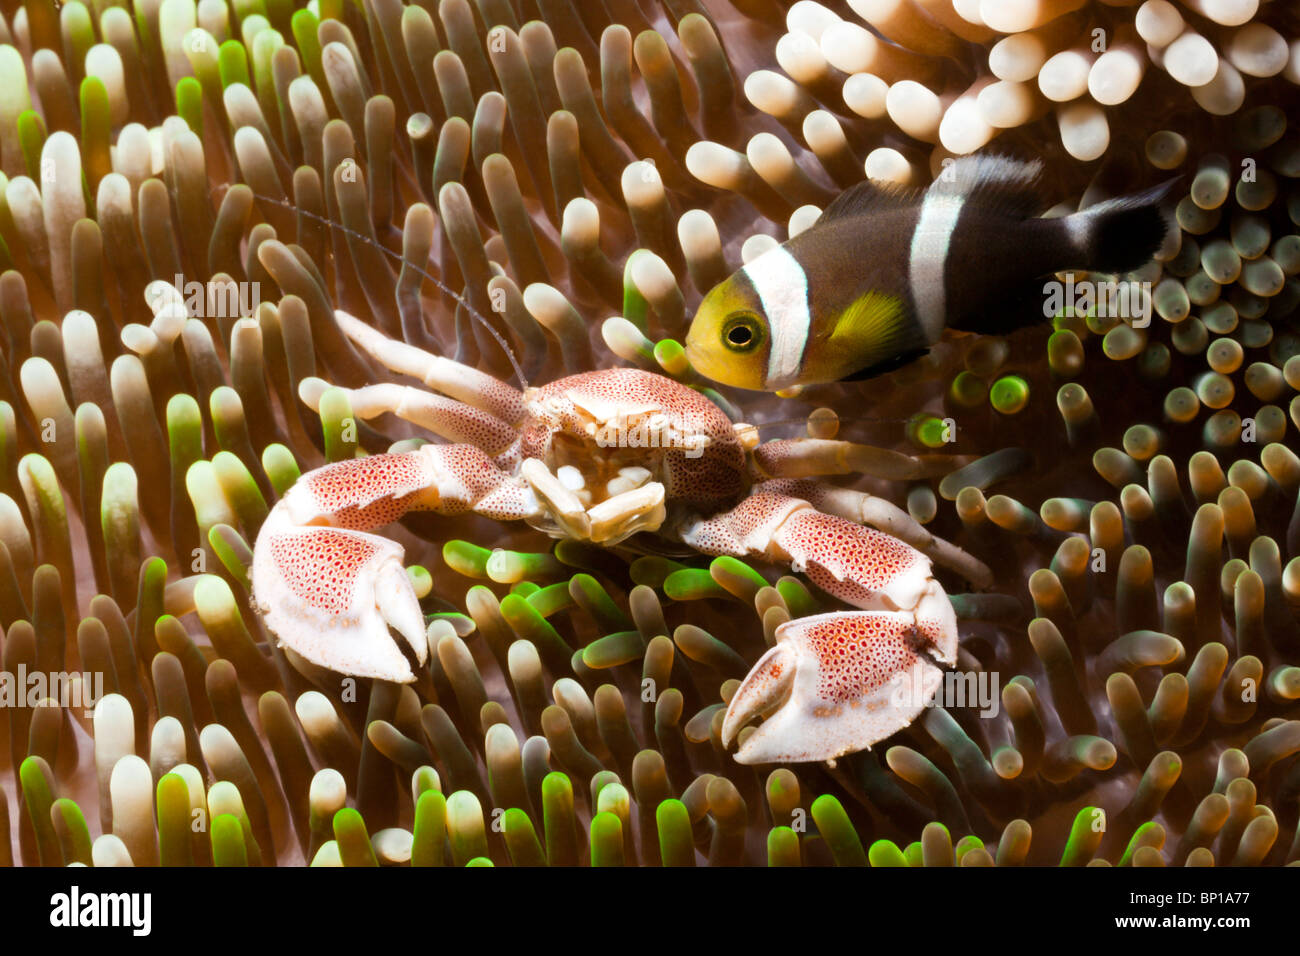 Porcelain Crab and Clarks Anemonefish, Neopetrolisthes maculatus, Lembeh Strait, Sulawesi, Indonesia Stock Photo